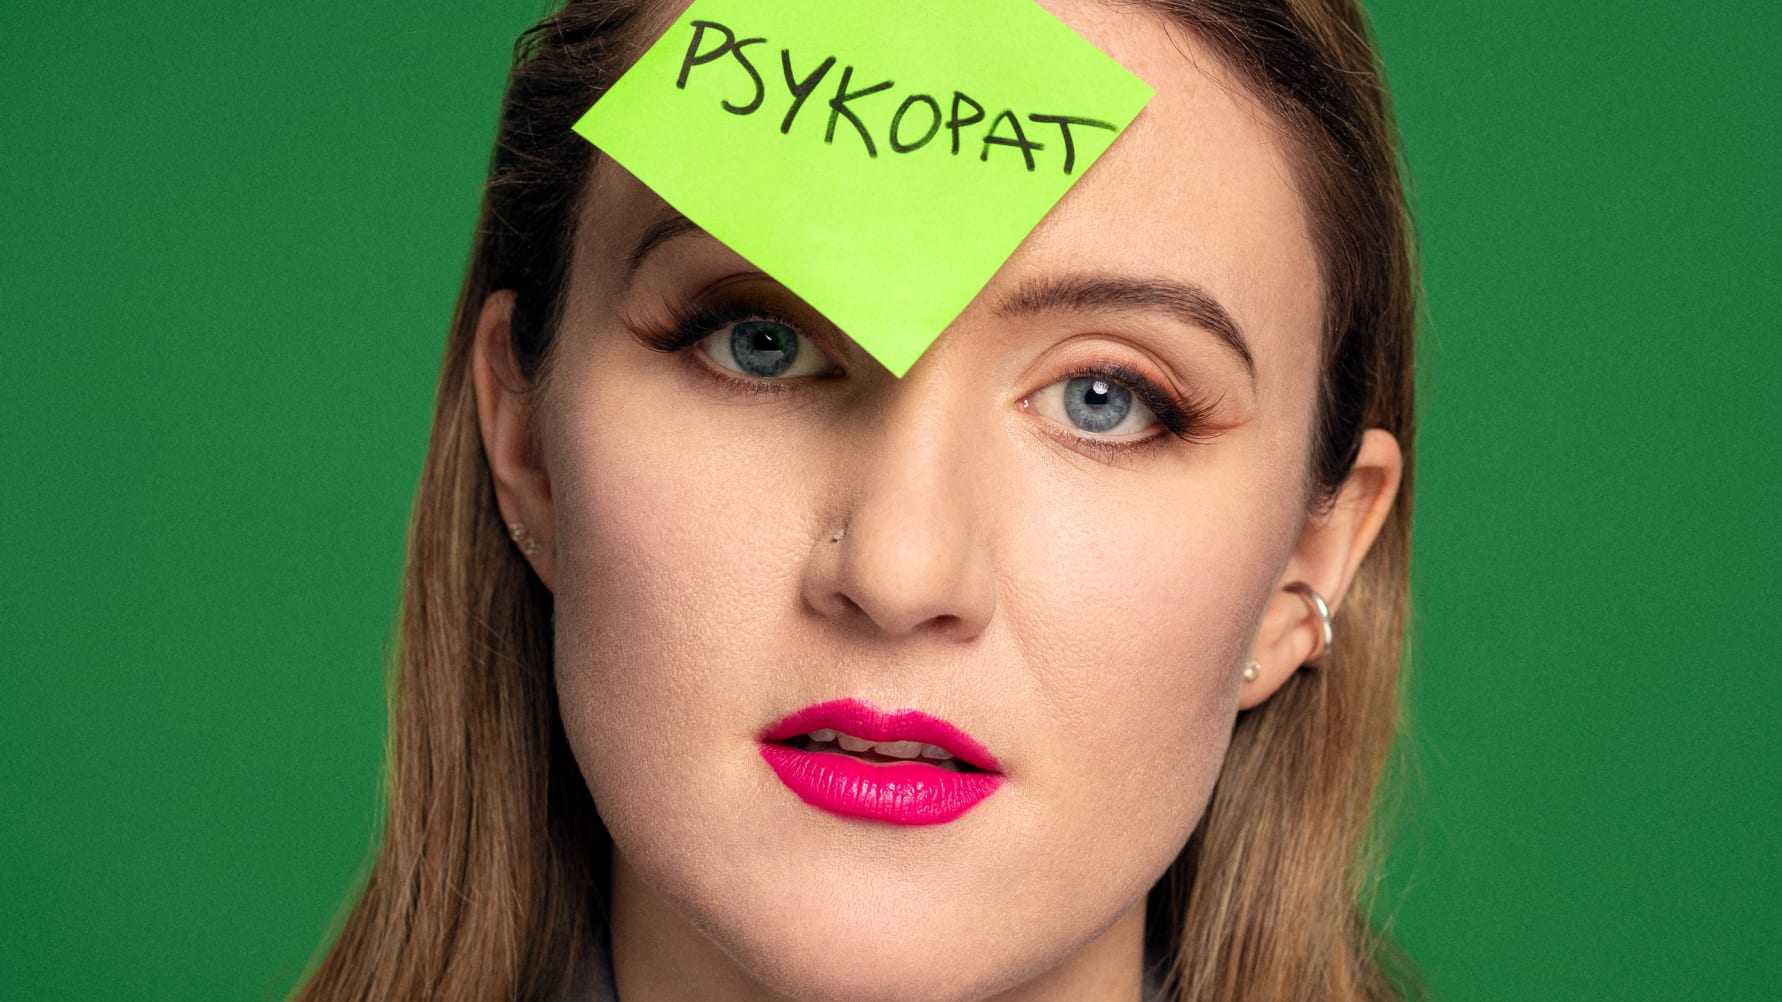 Myra Granberg släpper singeln ”Psykopat” från kommande EP ”+3 bpm”